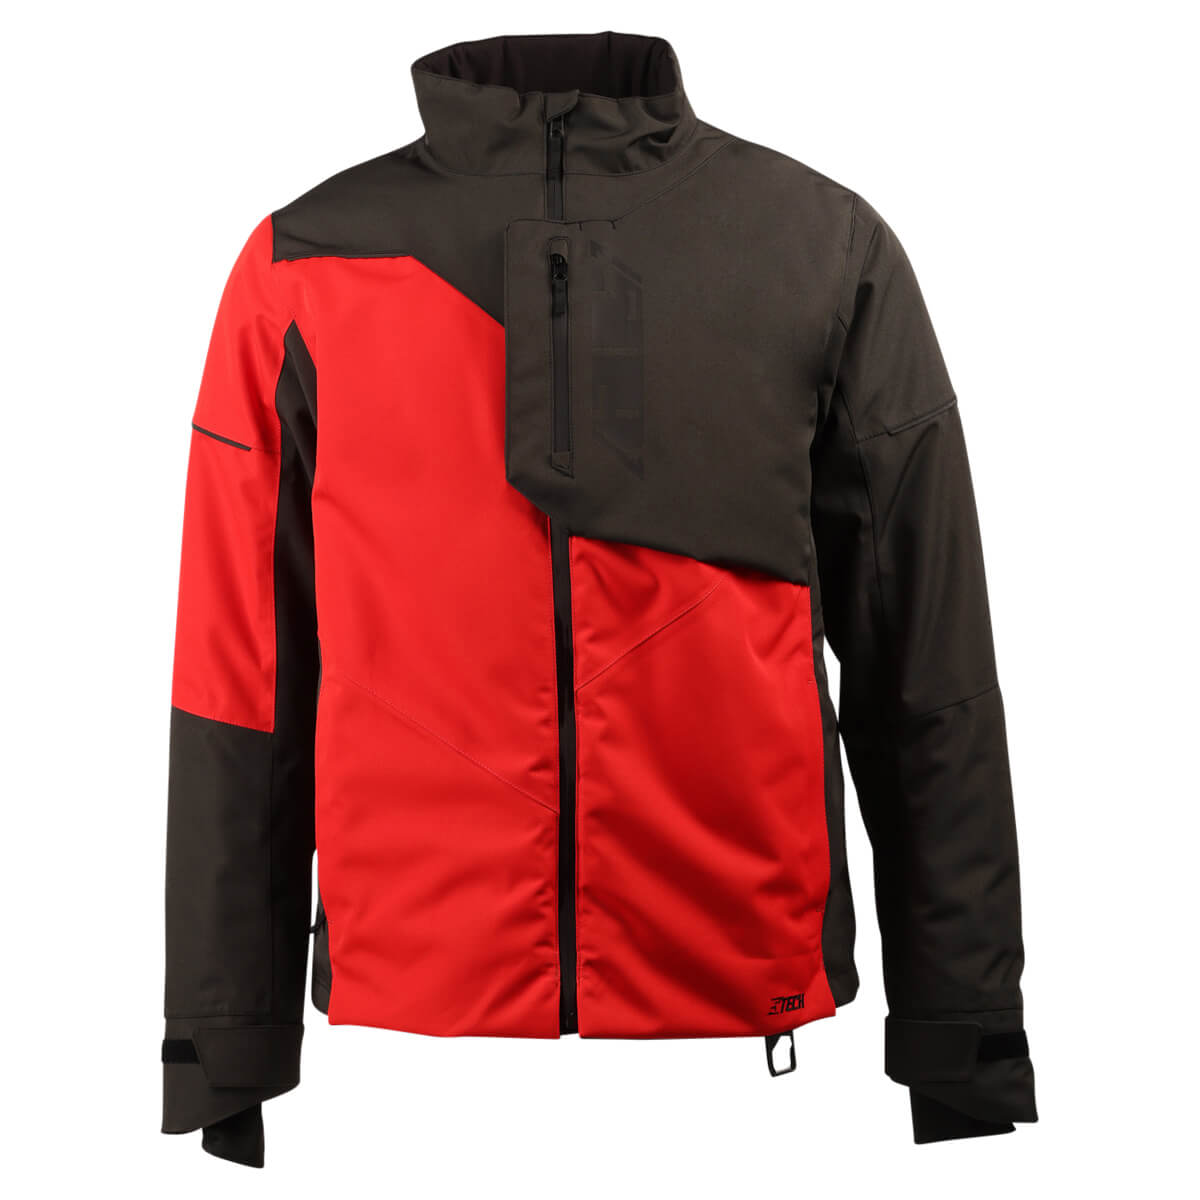 Range Insulated Jacket – 509